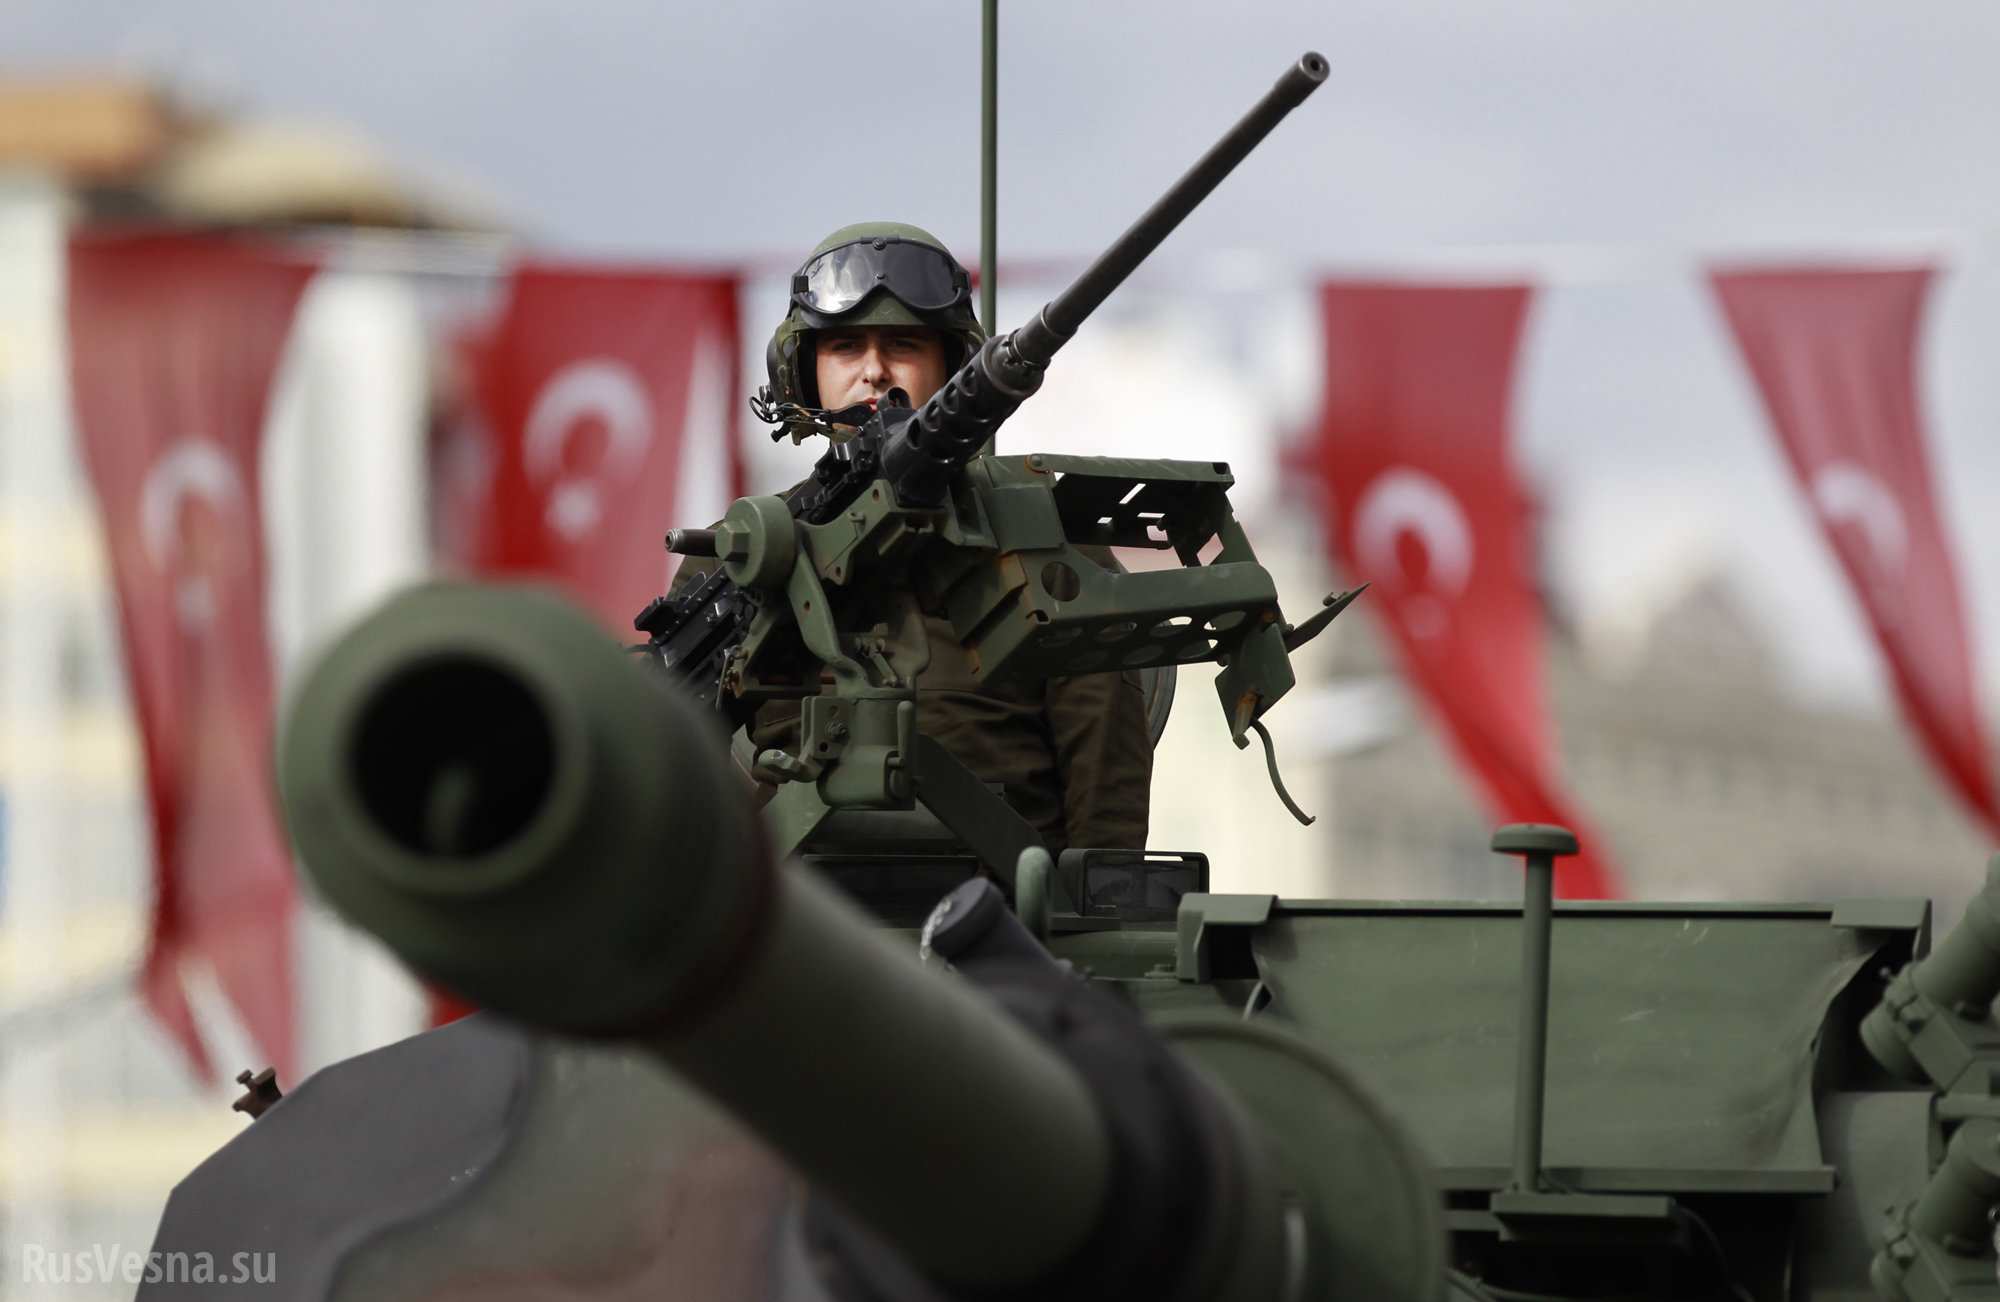 На военной базе в Турции прогремел мощный взрыв, уничтожены боеприпасы, есть жертвы - кадры